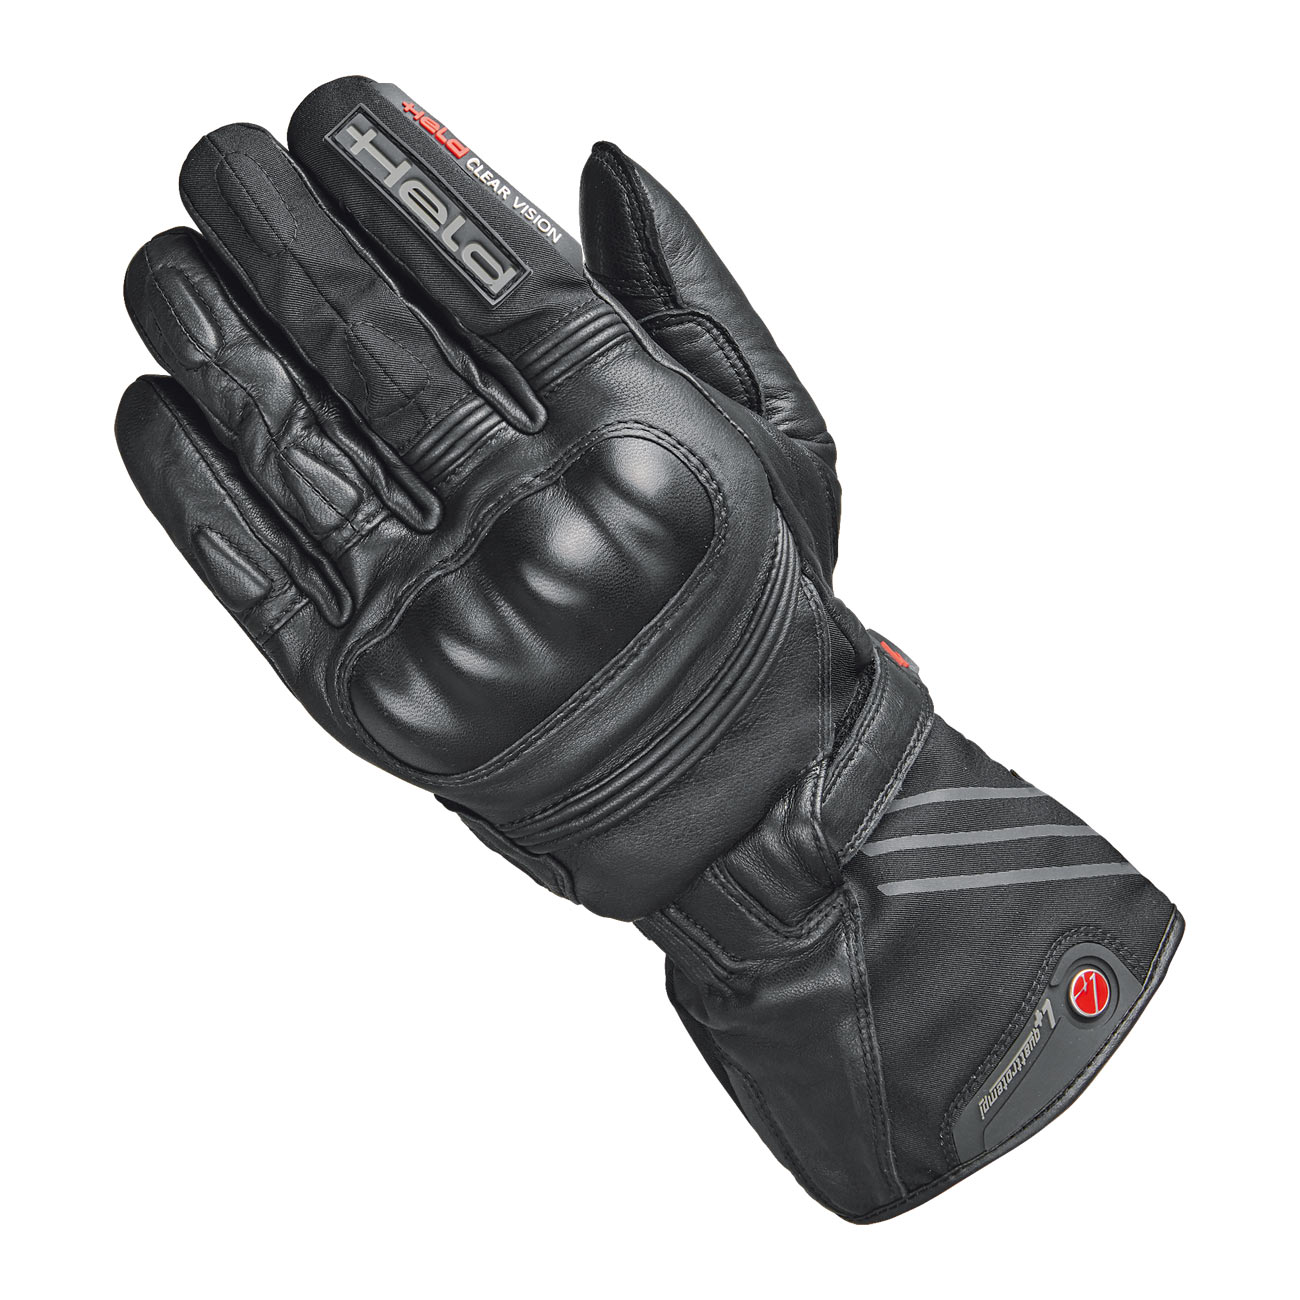 Twin II GORE-TEX® Handschuh + Gore 2in1 Technologie